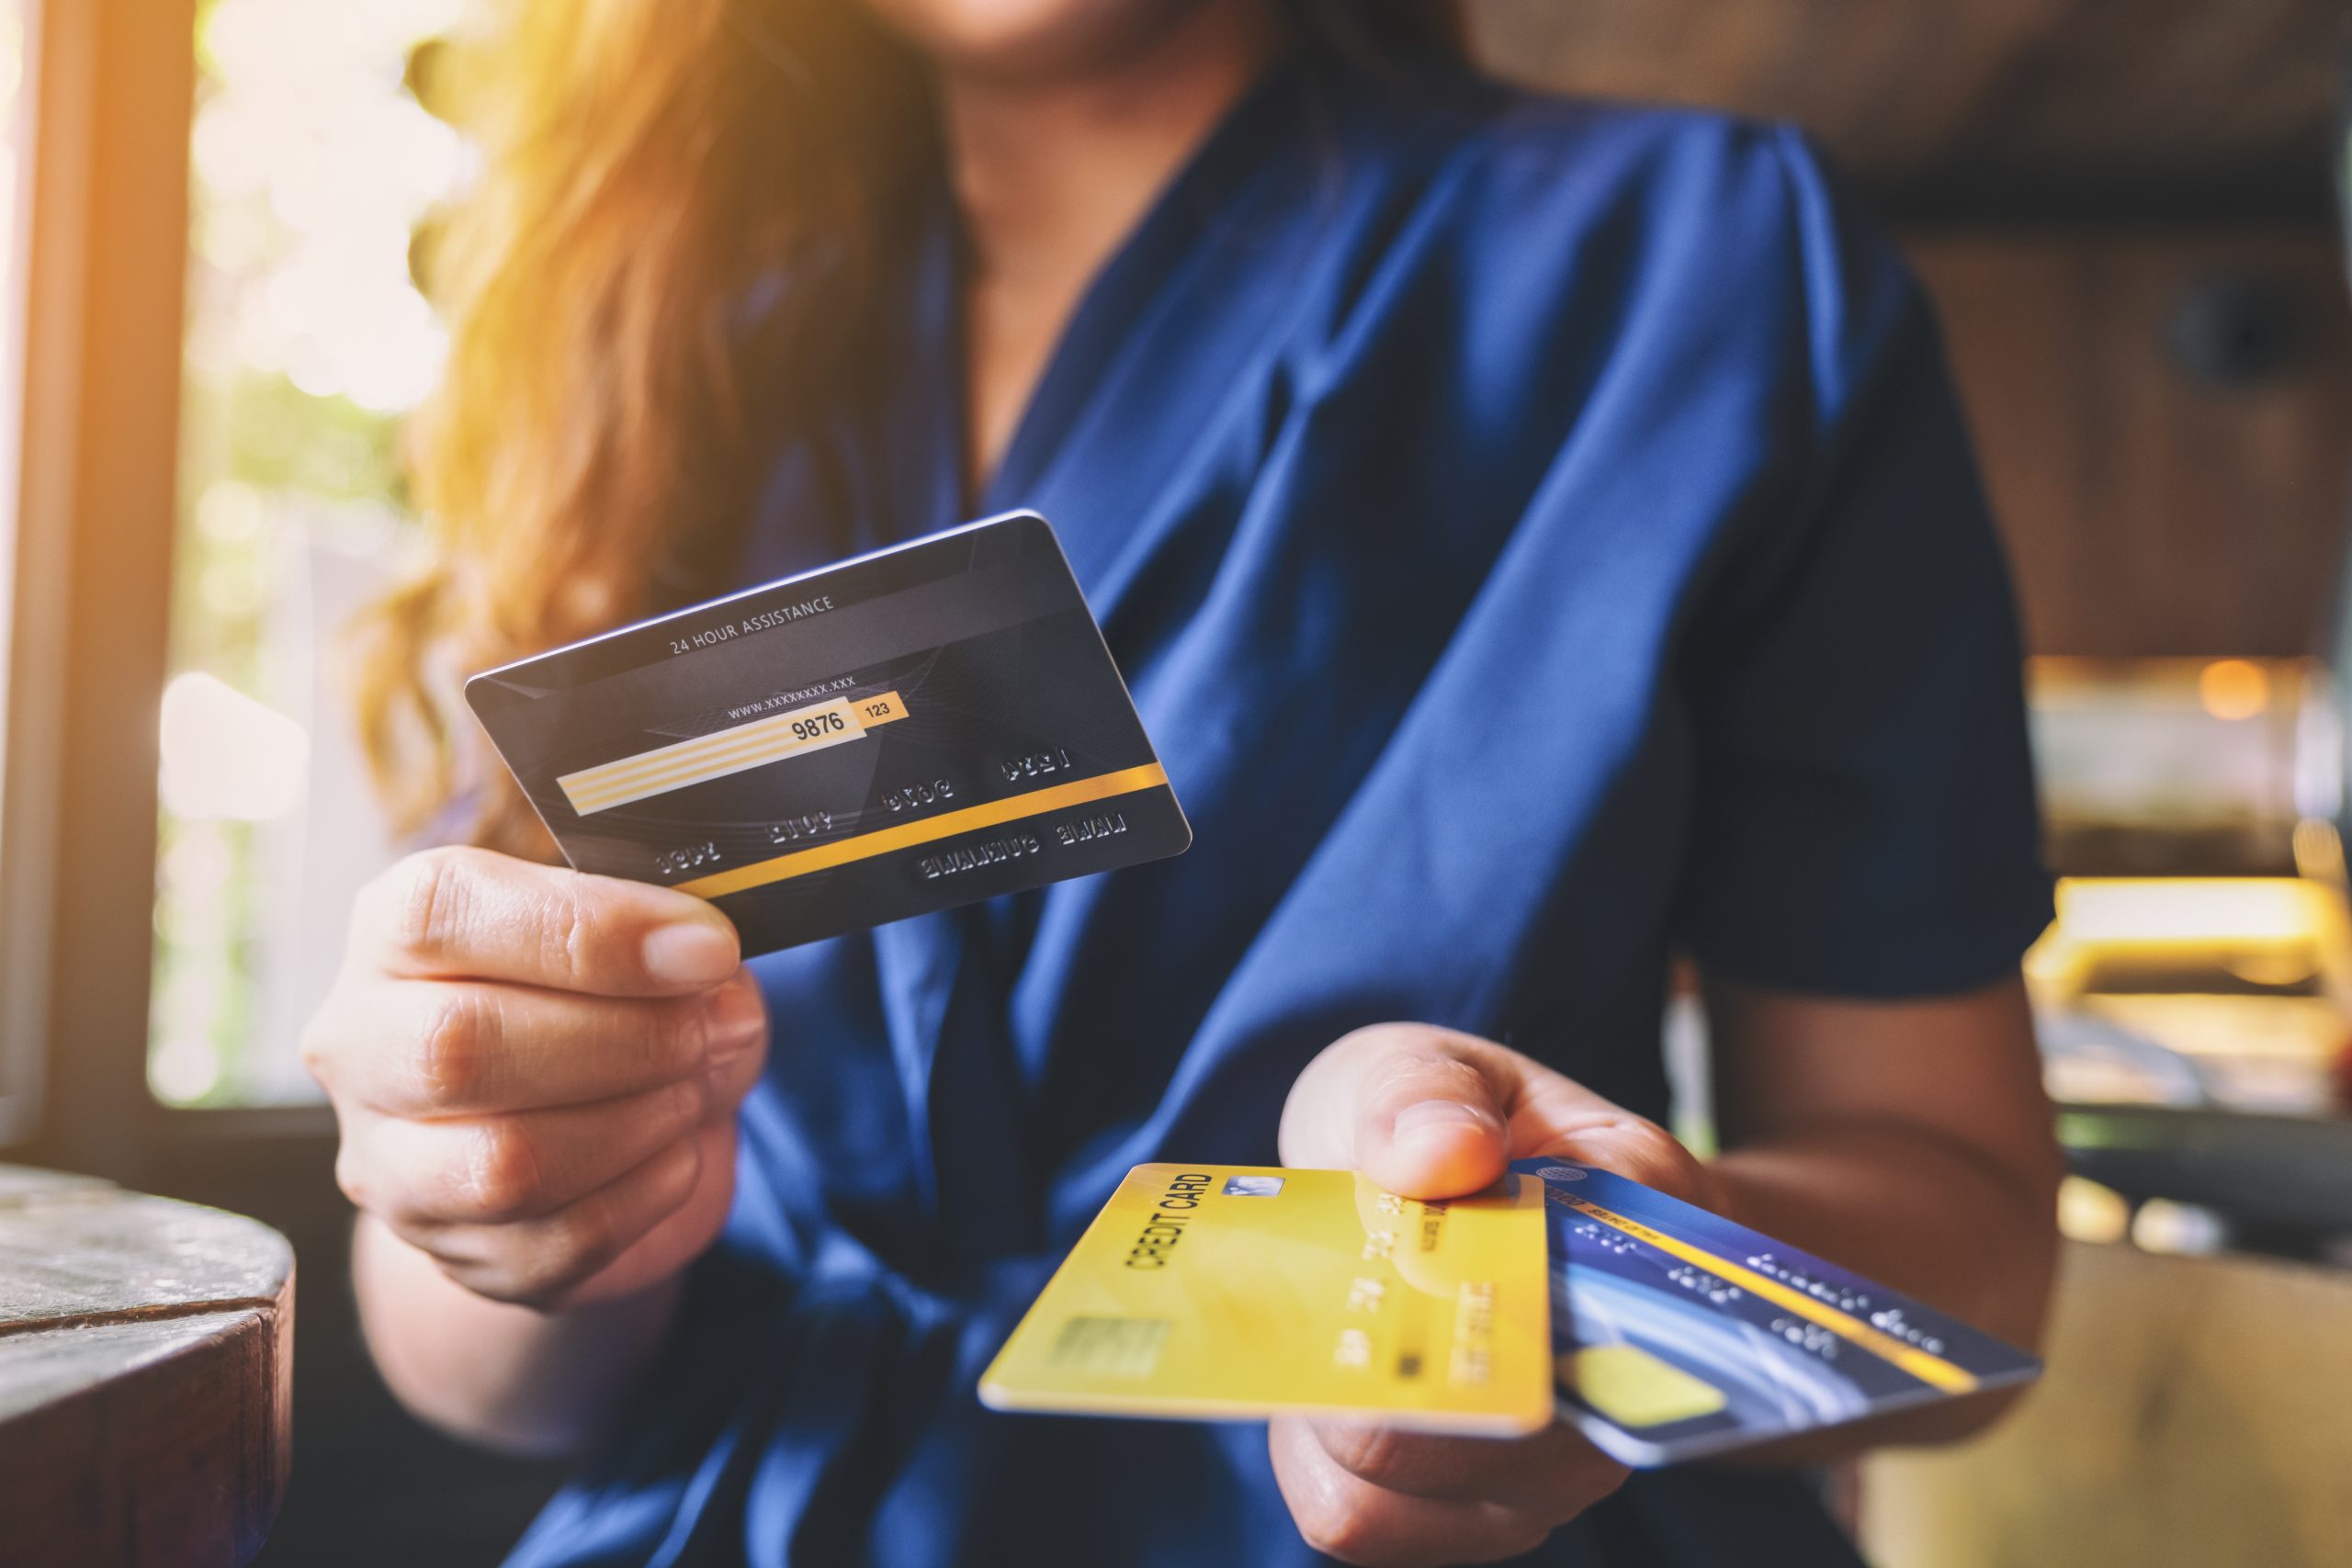 Mulher branca de pé utilizando uma roupa azul escuro está segurando um cartão de crédito com a mão esquerda e dois com a direita, ela está simulando uma transferência de ponto entre bancos.